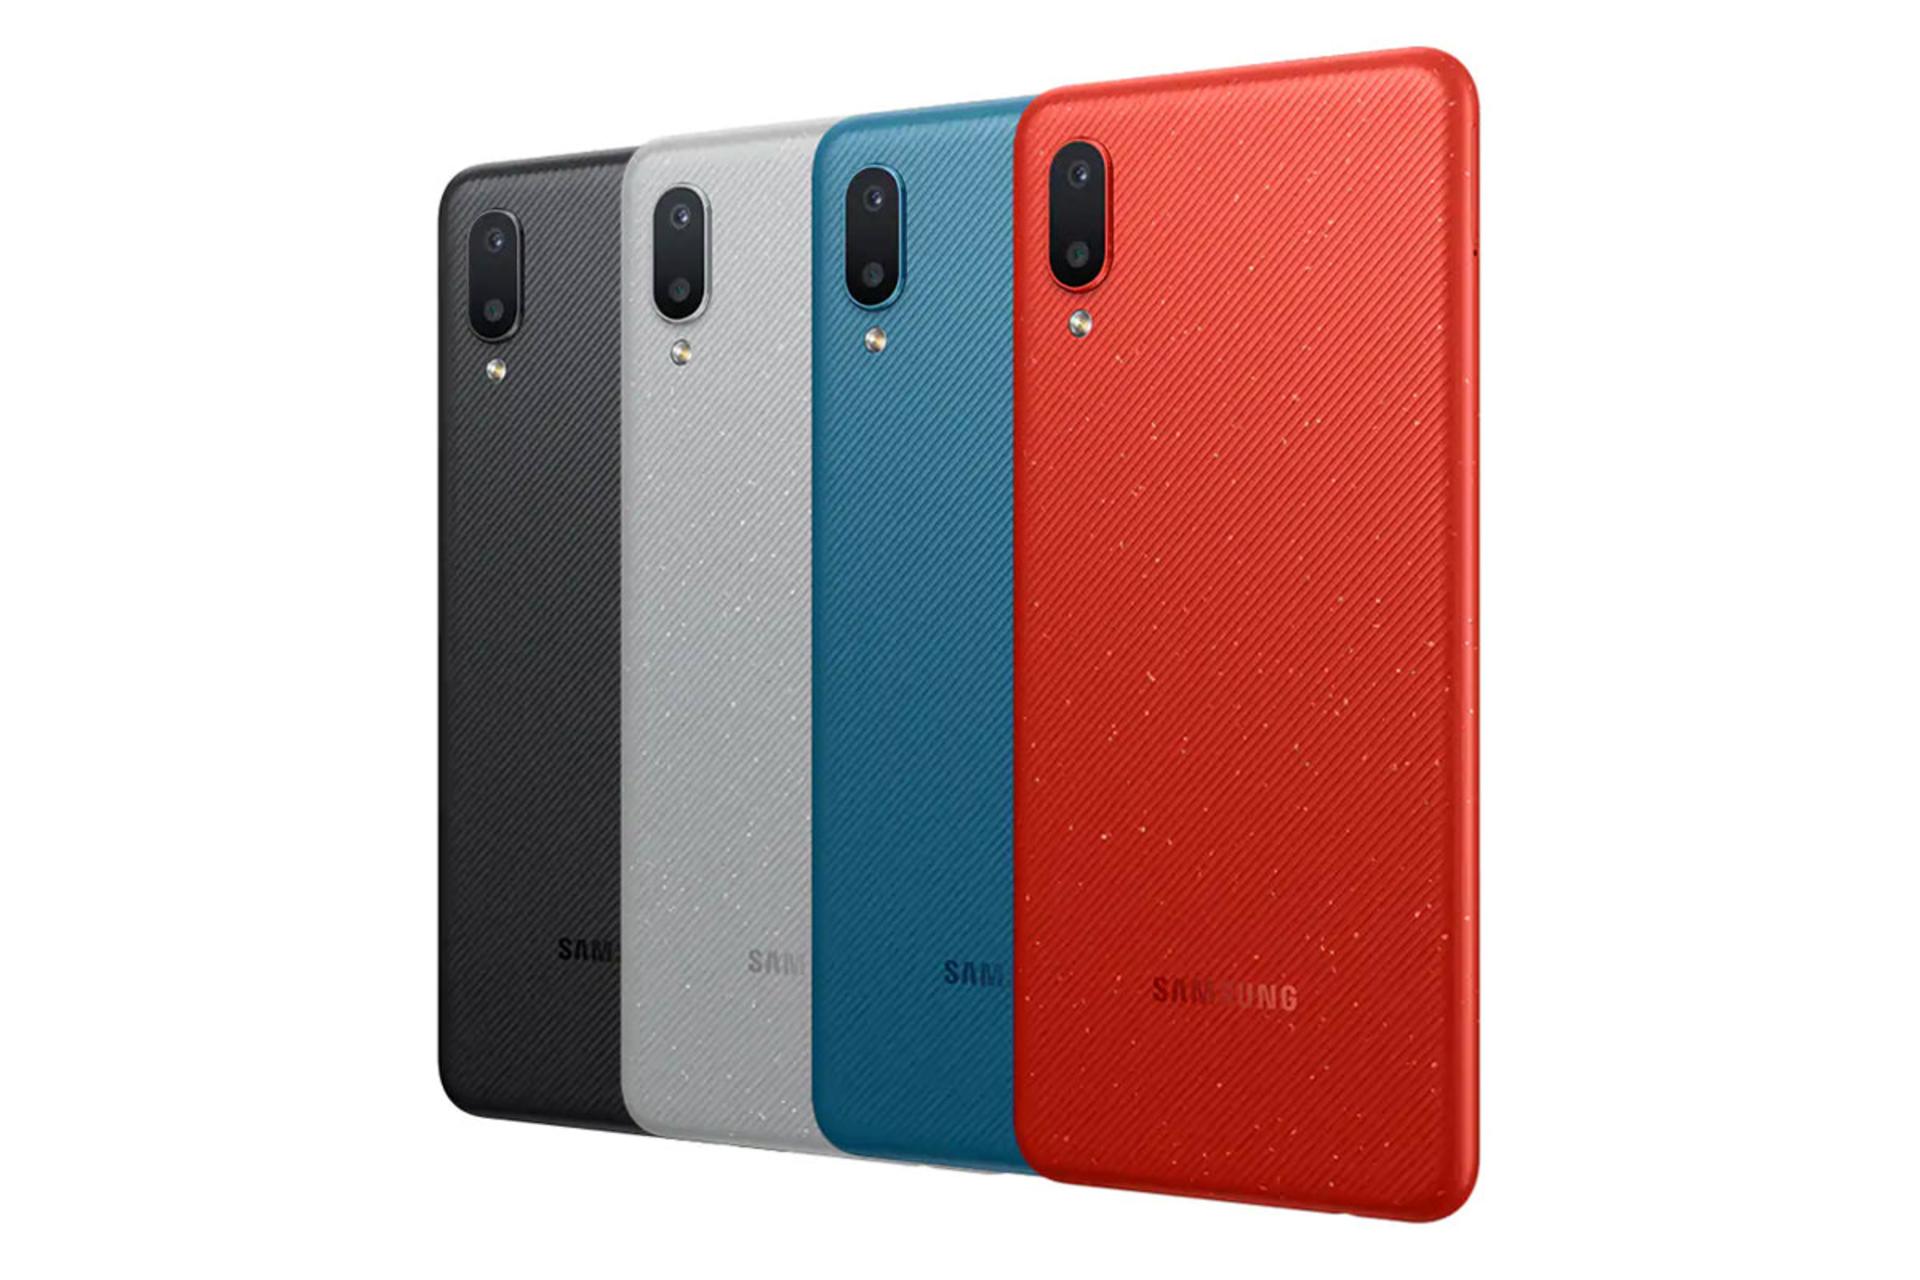 نمای پشت موبایل گلکسی M02 سامسونگ رنگ مشکی، آبی، خاکستری و قرمز